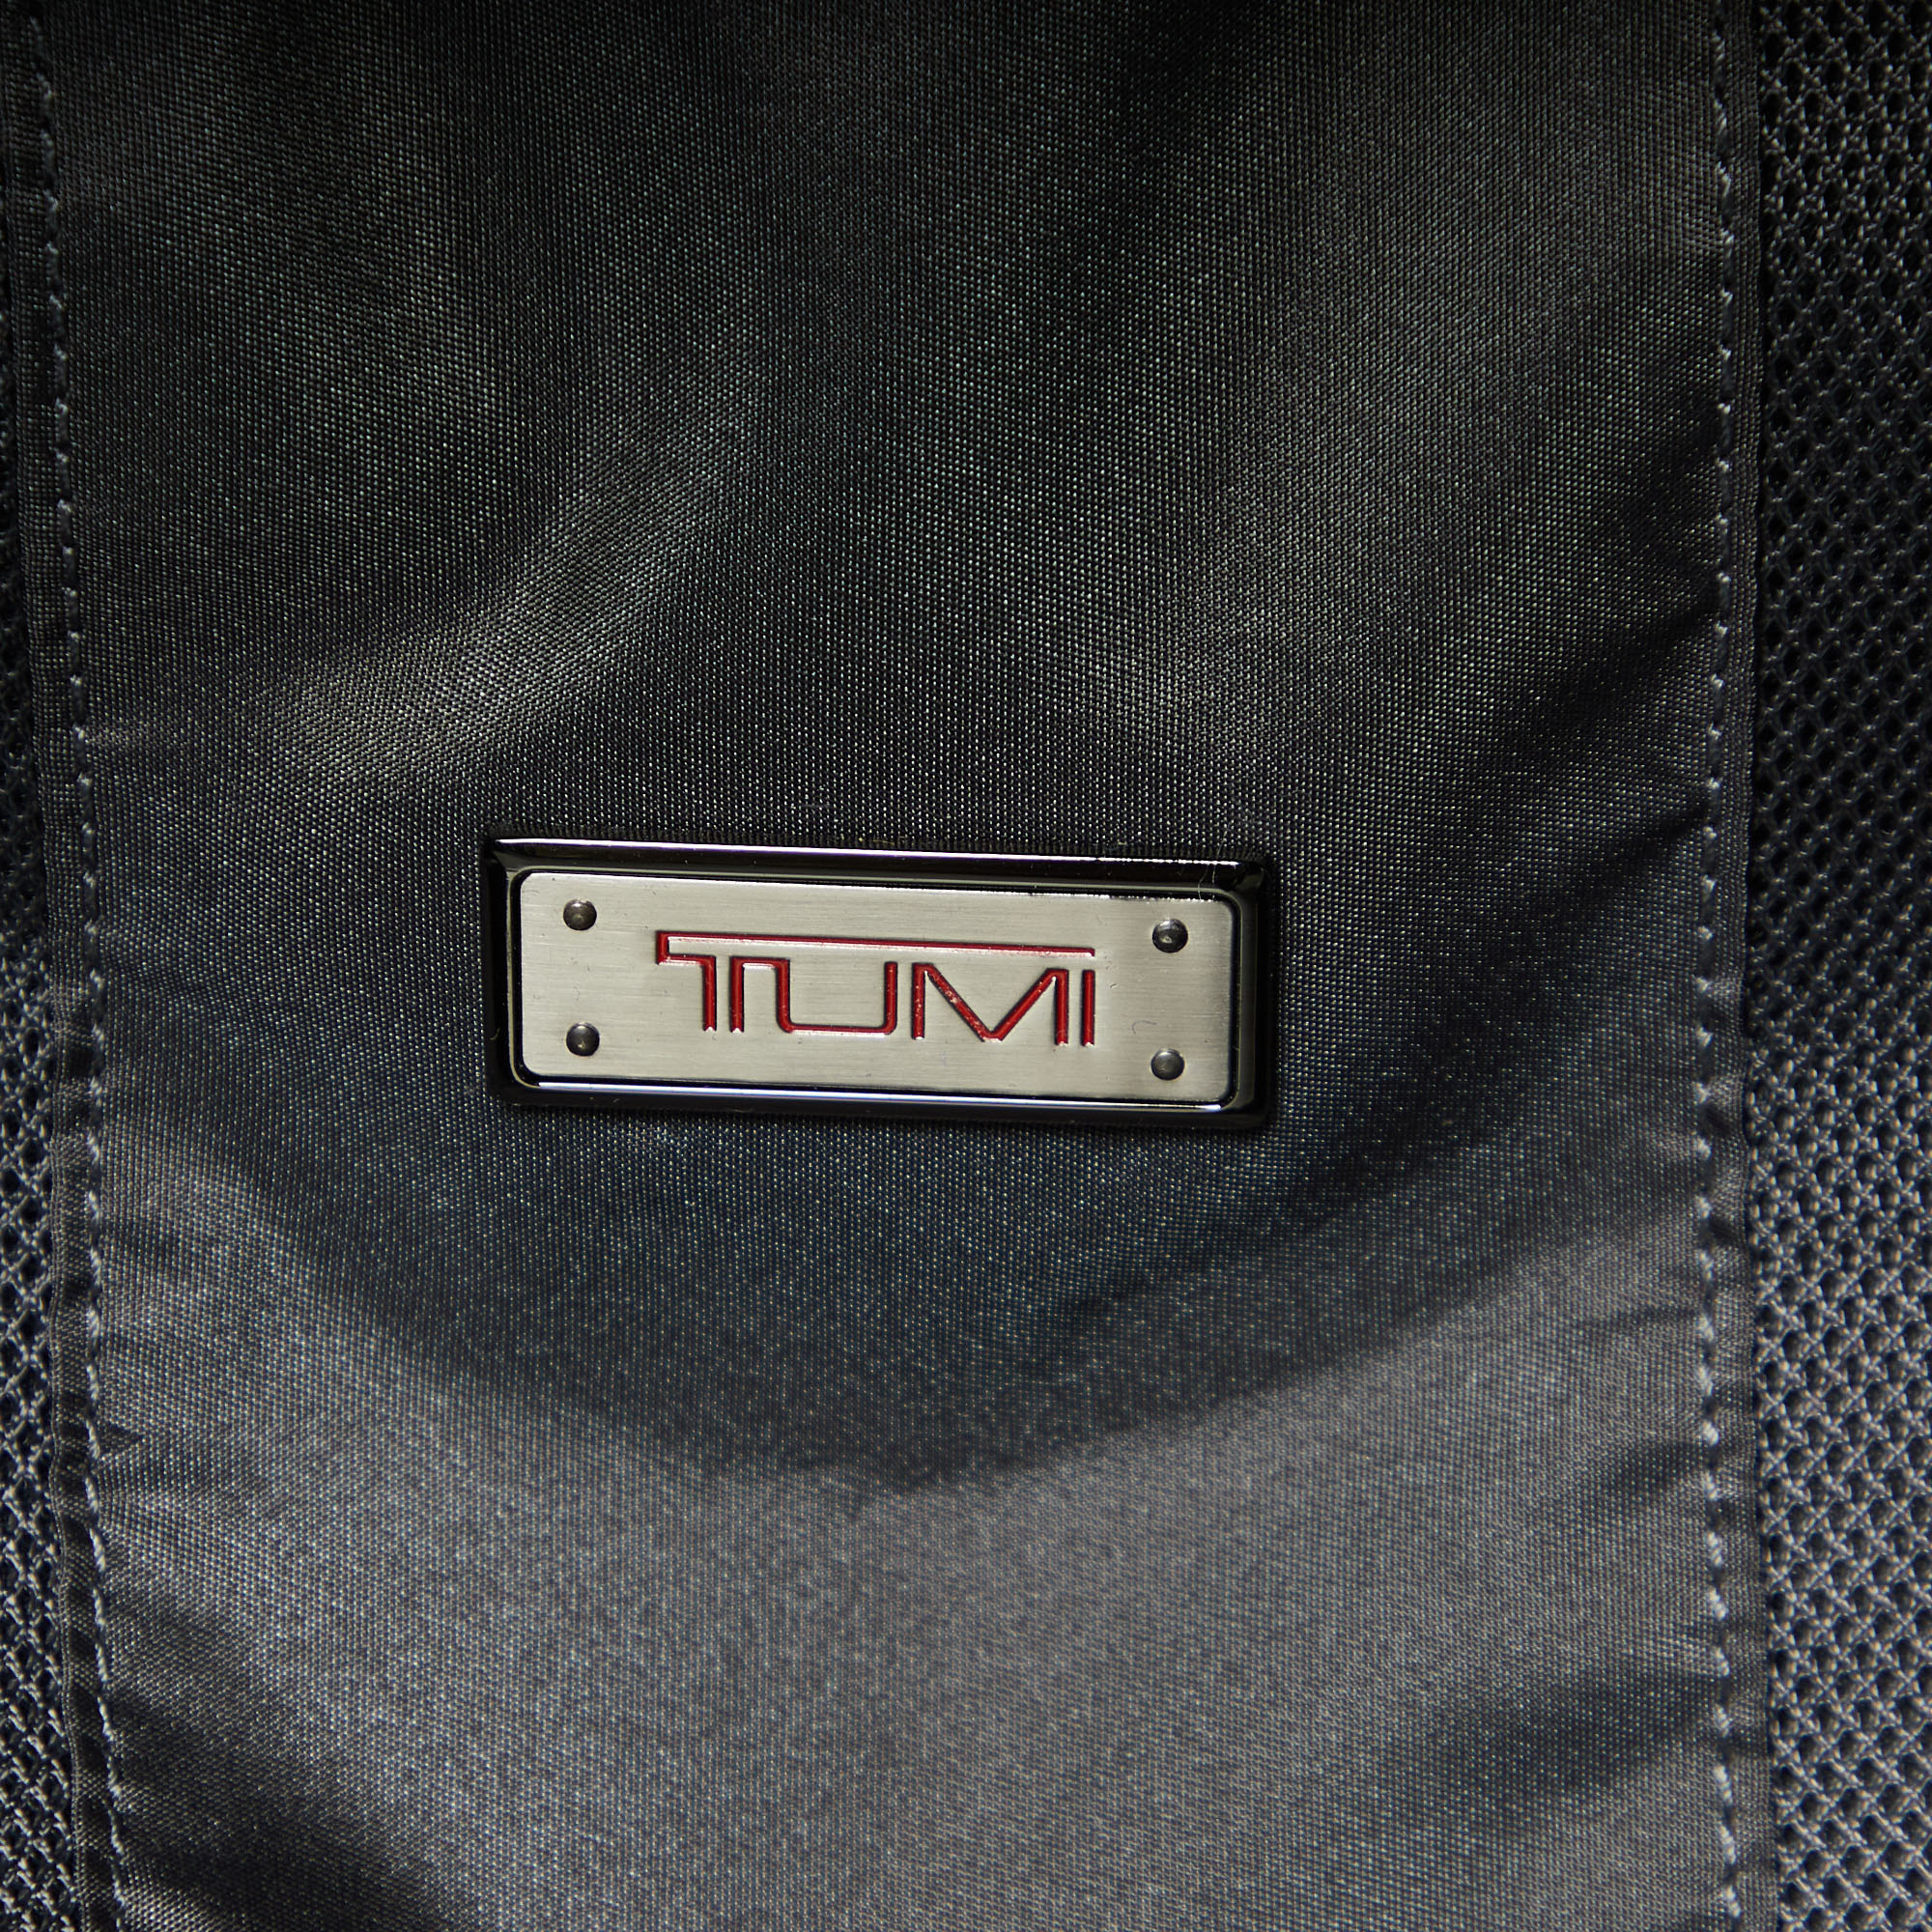 TUMI Black NylonTumi Frequent Expandable Traveler Suitcase Suitcase